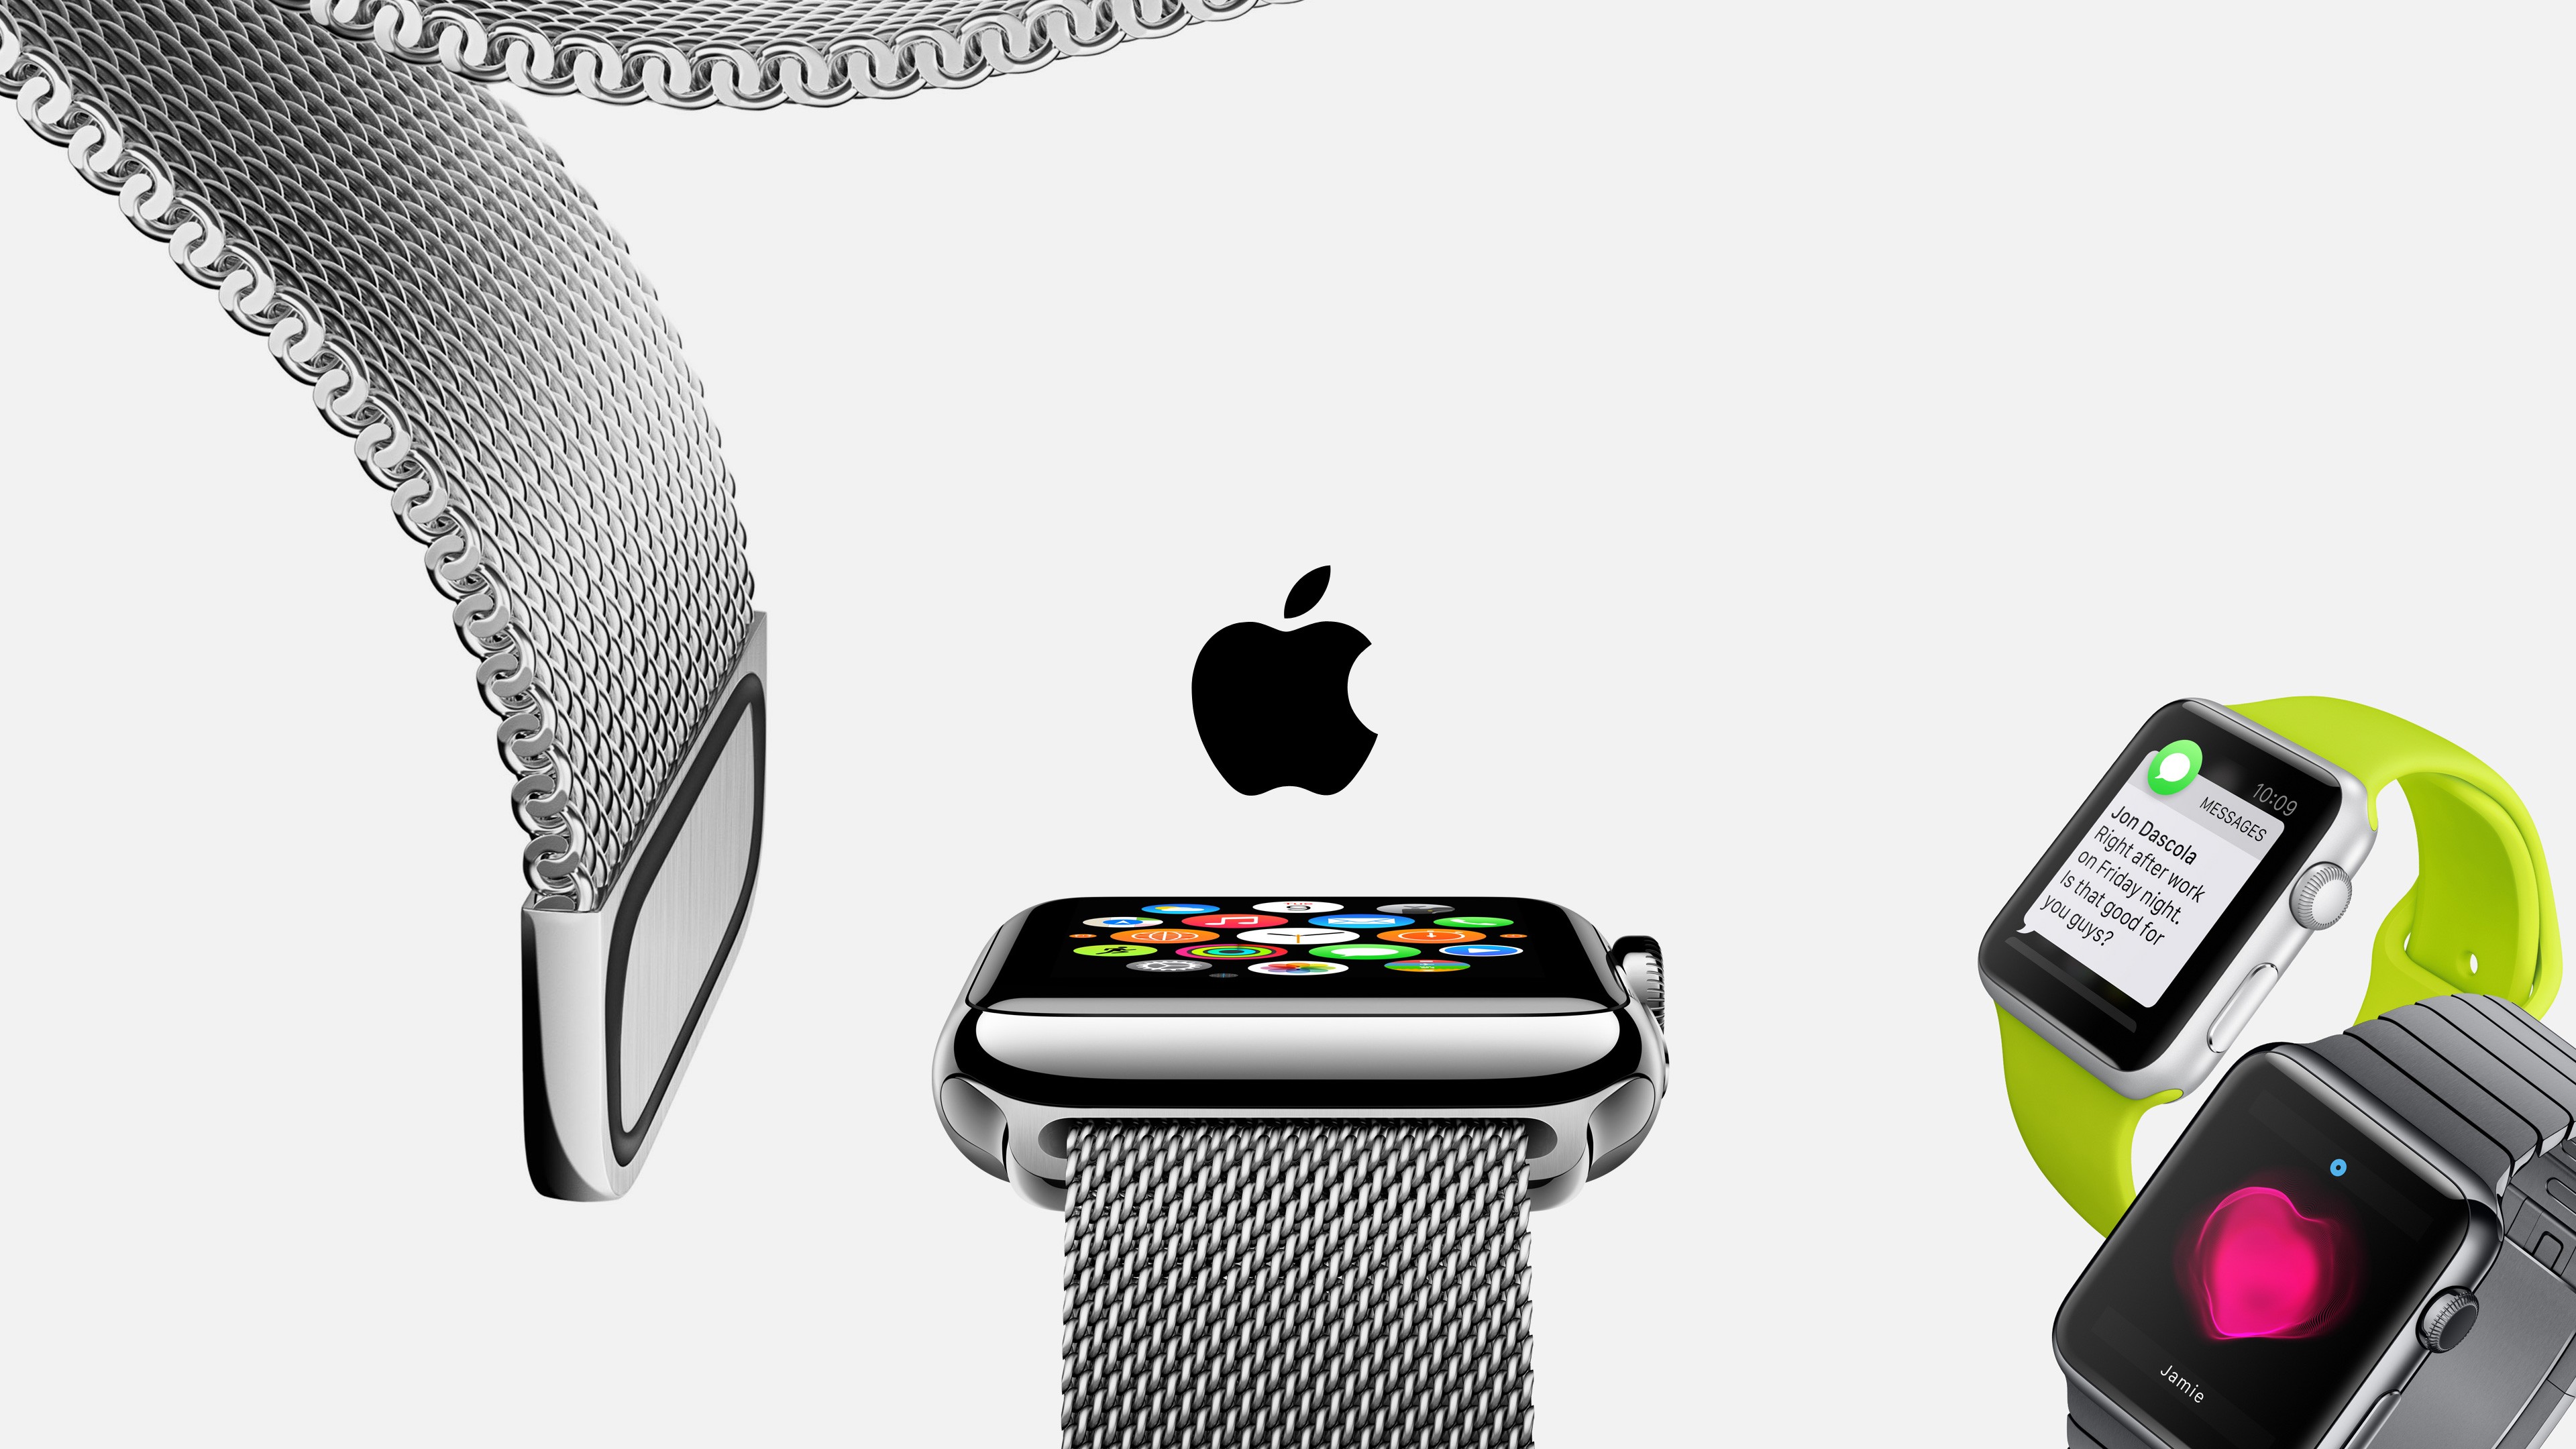 Apple Watch Wallpaper, Hi-Tech / Watches: Apple Watch, watches